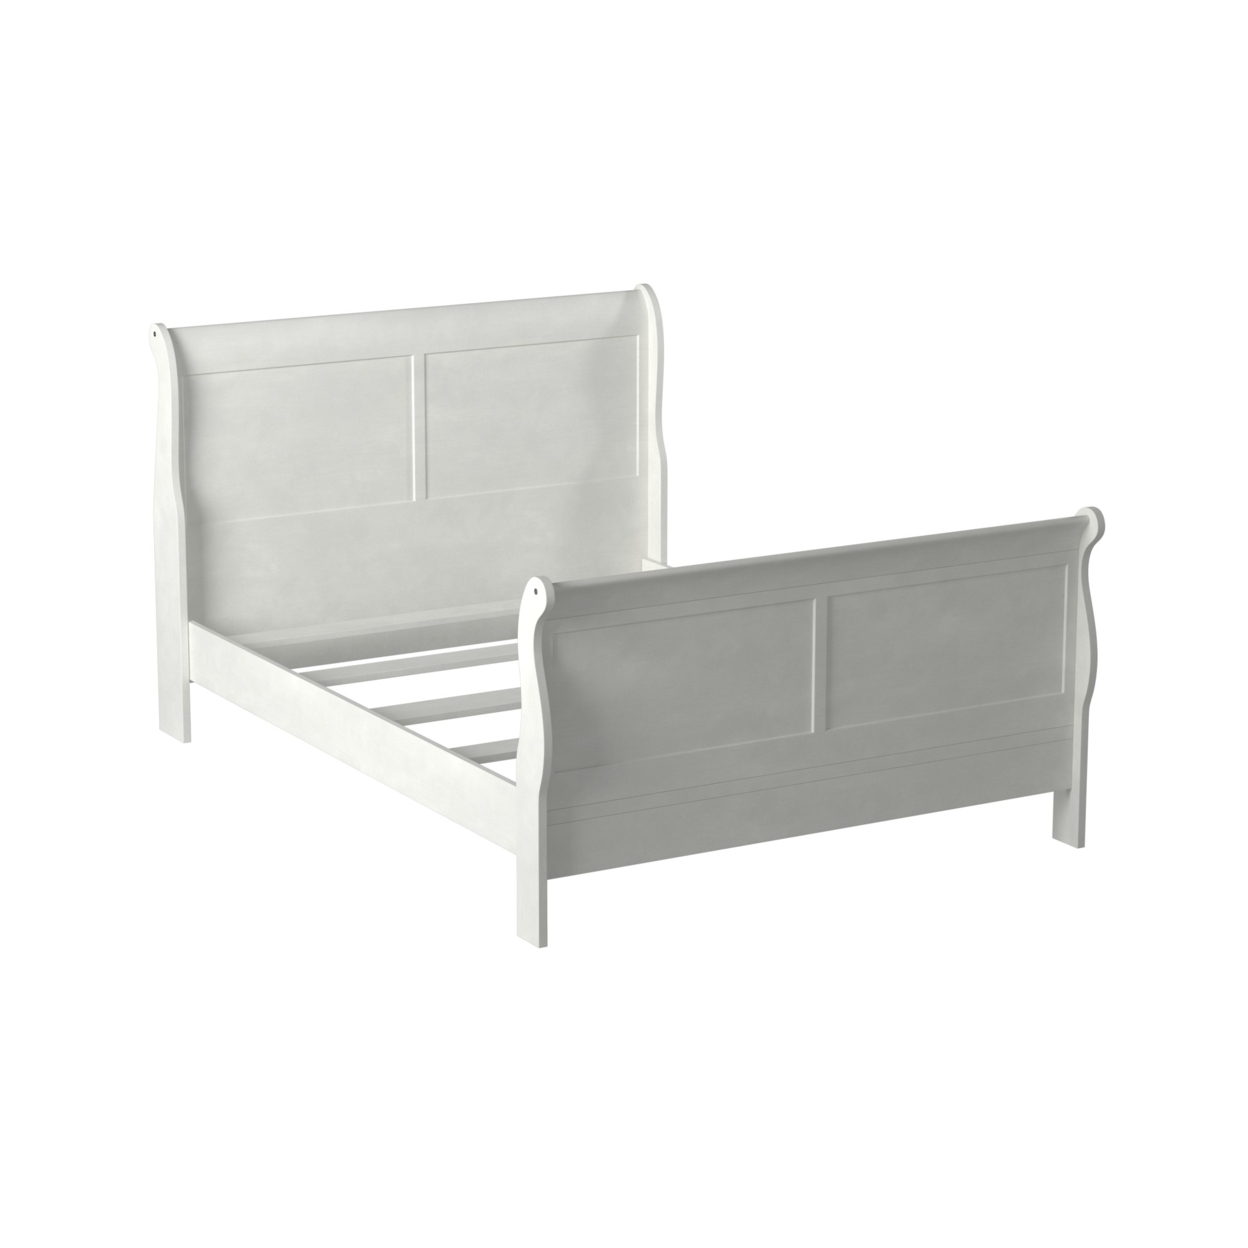 91 Inch Platform Queen Size Bed, Sleigh Panel Design, Pine Wood White